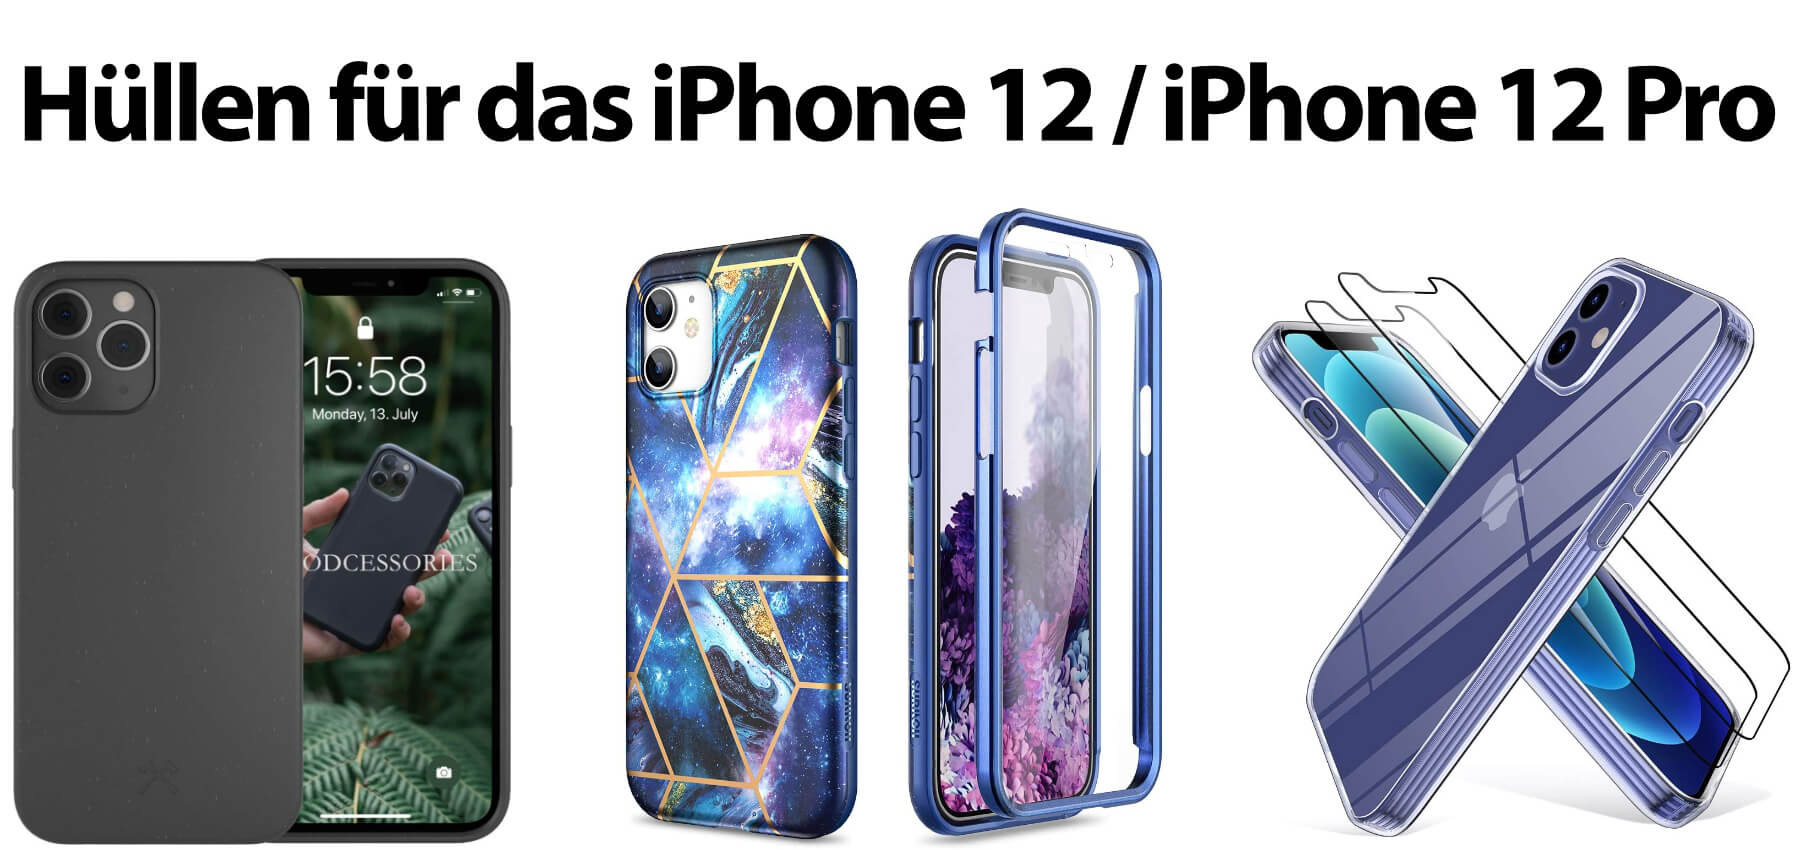 Hier findet ihr verschiedene iPhone 12 Hüllen und das passende iPhone 12 Pro Case. Transparente und bunte Handyhüllen für das Apple-Smartphone aus 2020.